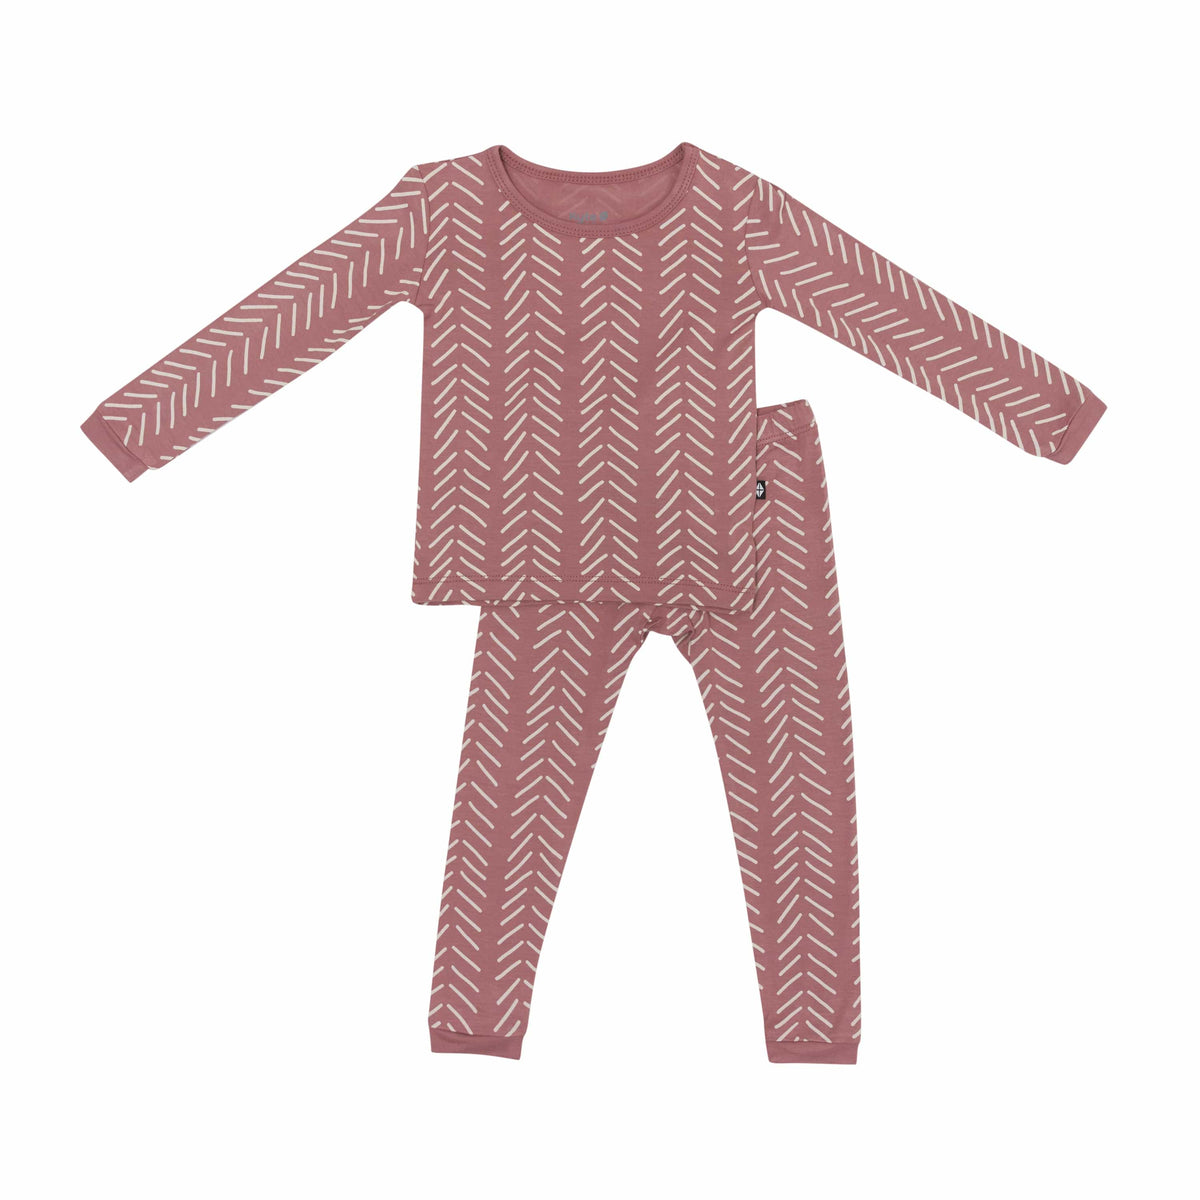 Kyte Baby Toddler Long Sleeve Pajamas Long Sleeve Pajamas in Dusty Rose Herringbone